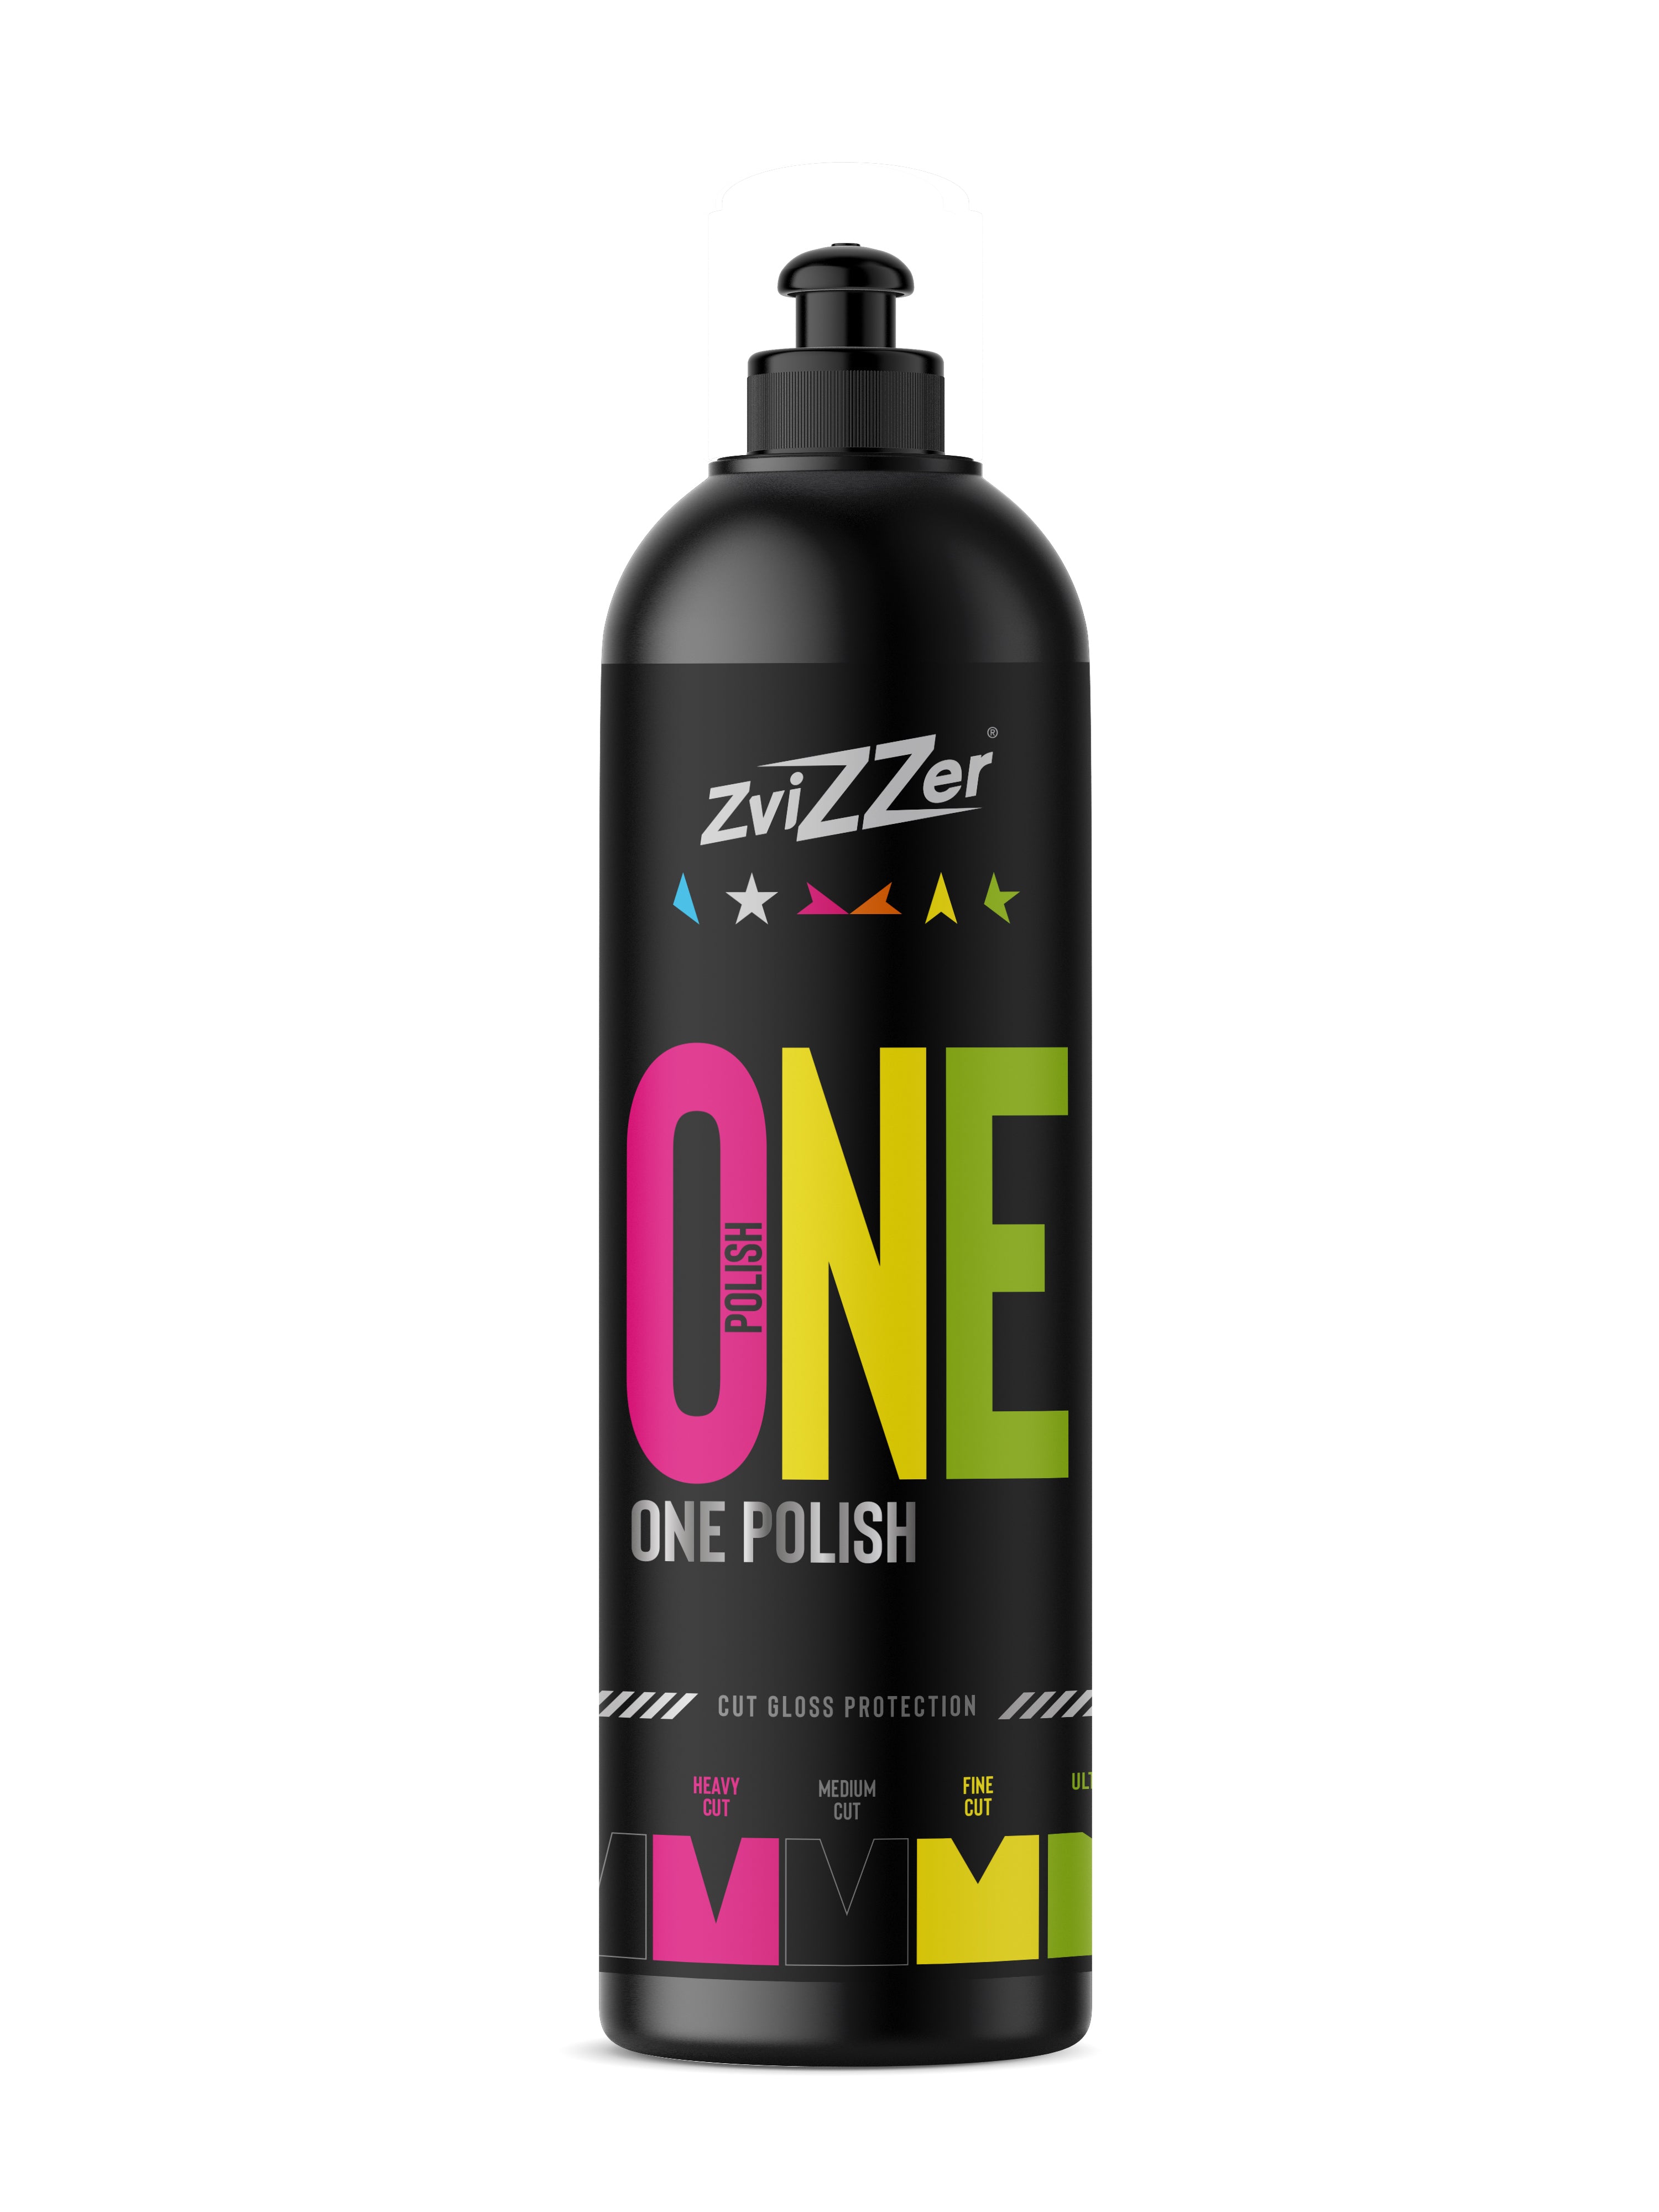 Zvizzer One Polish (Cut, Gloss & Protection)